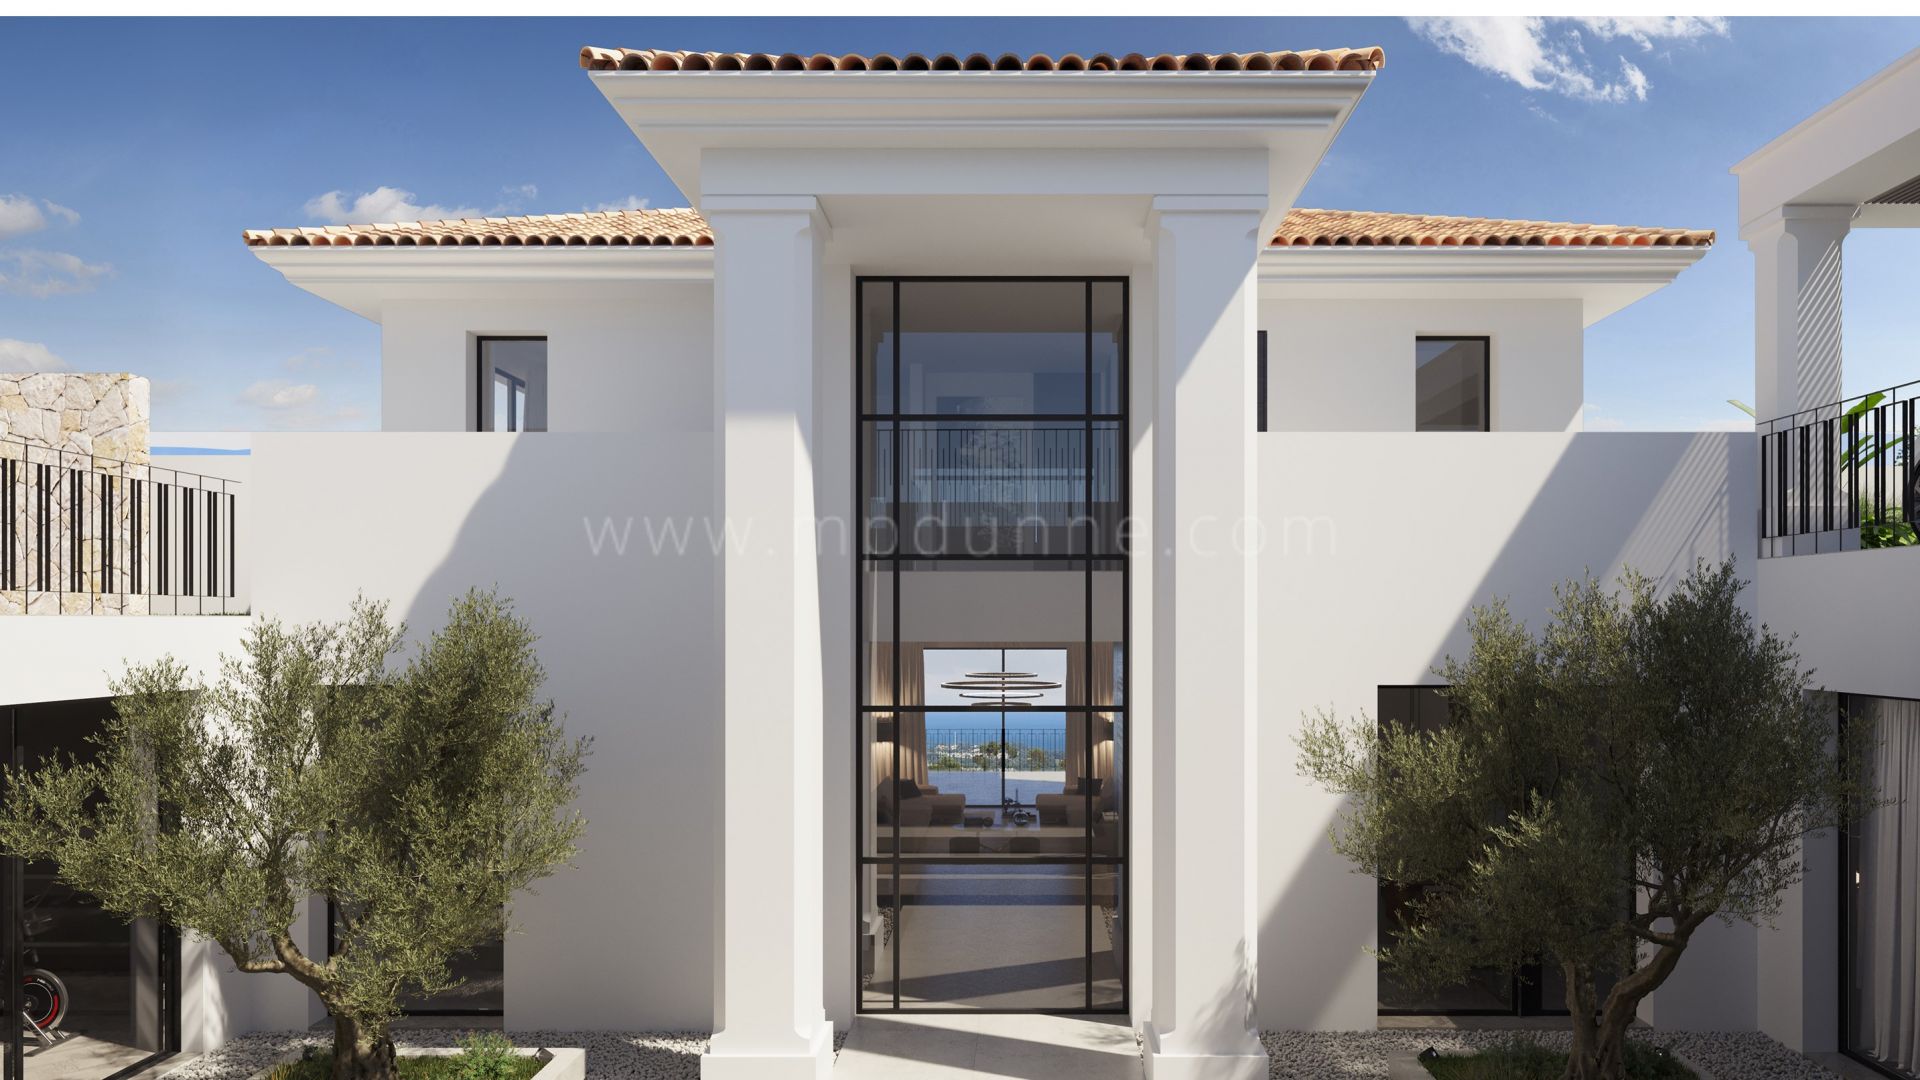 Villa de estilo andaluz en construcción con vistas panorámicas en Benahavis